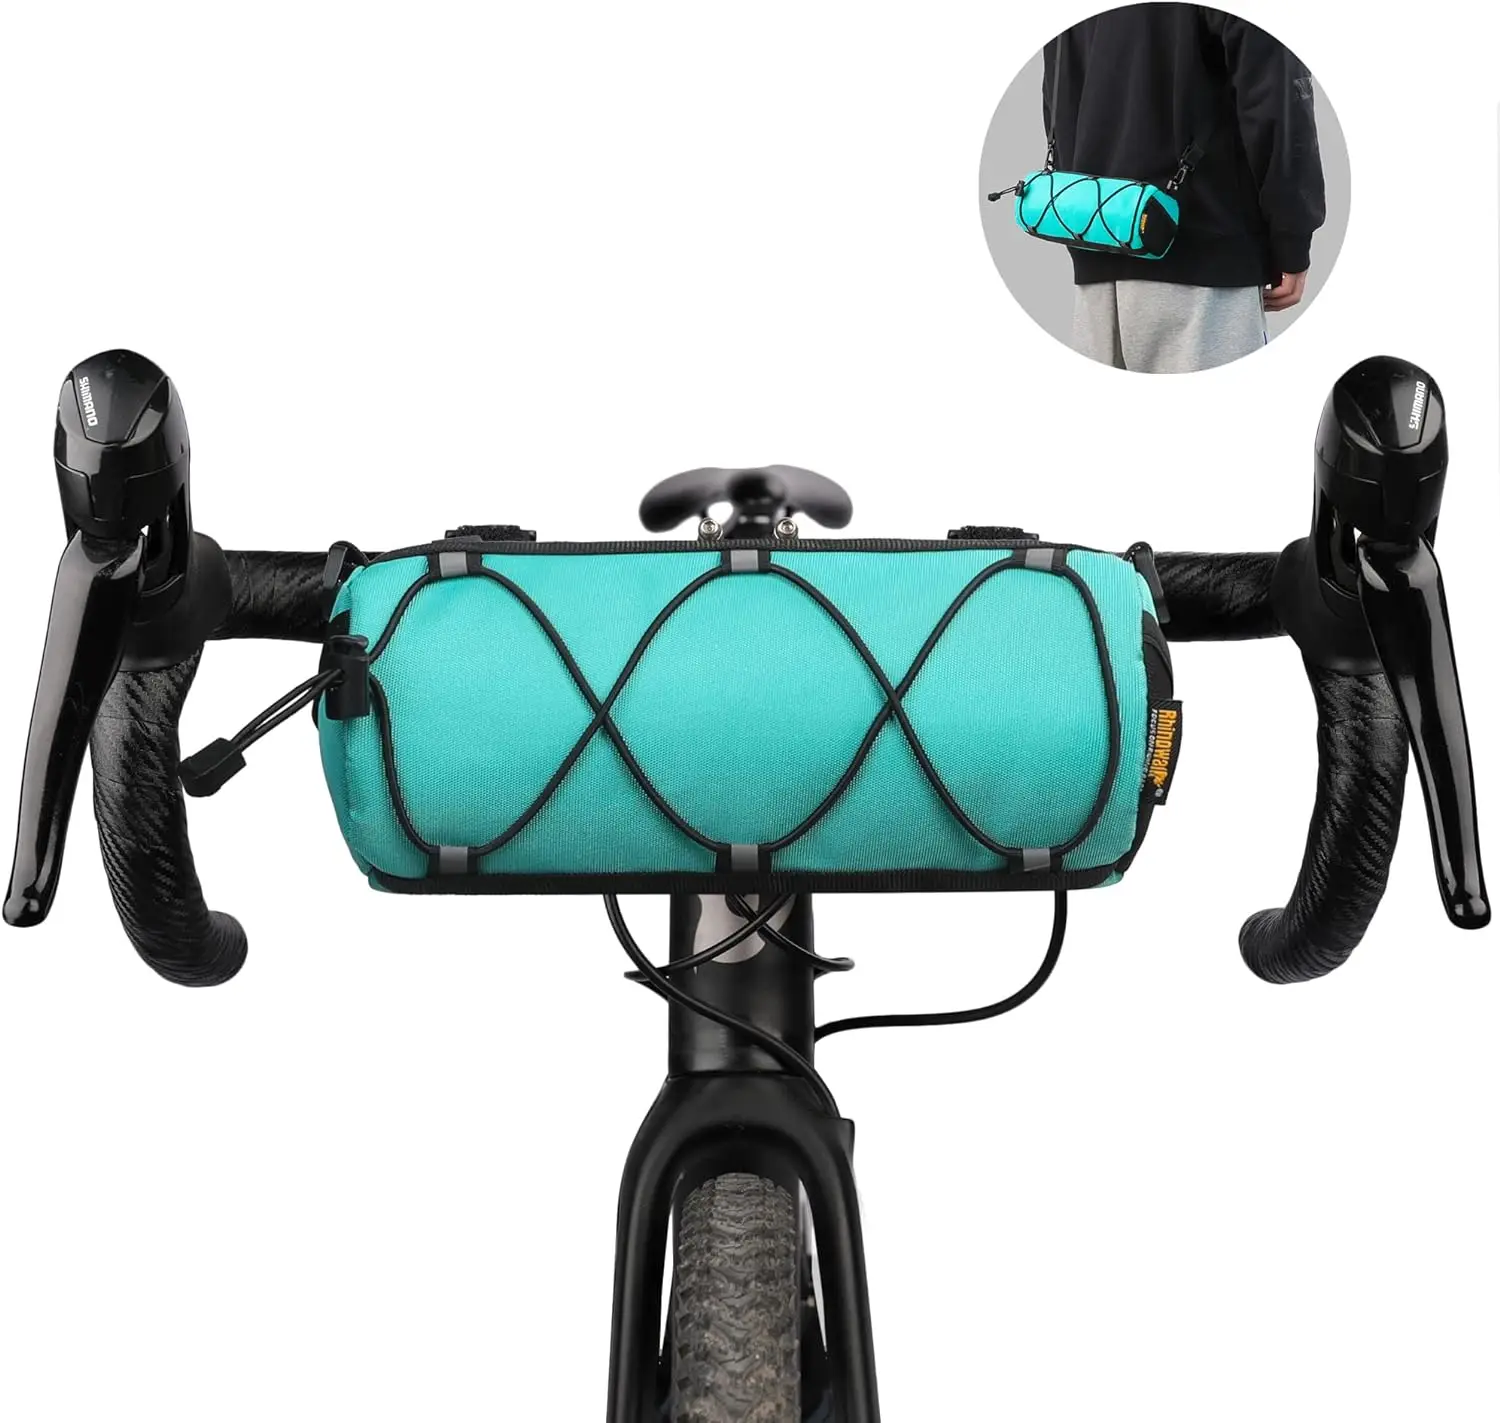 

Сумка на руль велосипеда Rhinowalk, передняя сумка на плечо, сумка для хранения с плечевым ремнем, дорожная сумка для горного велосипеда